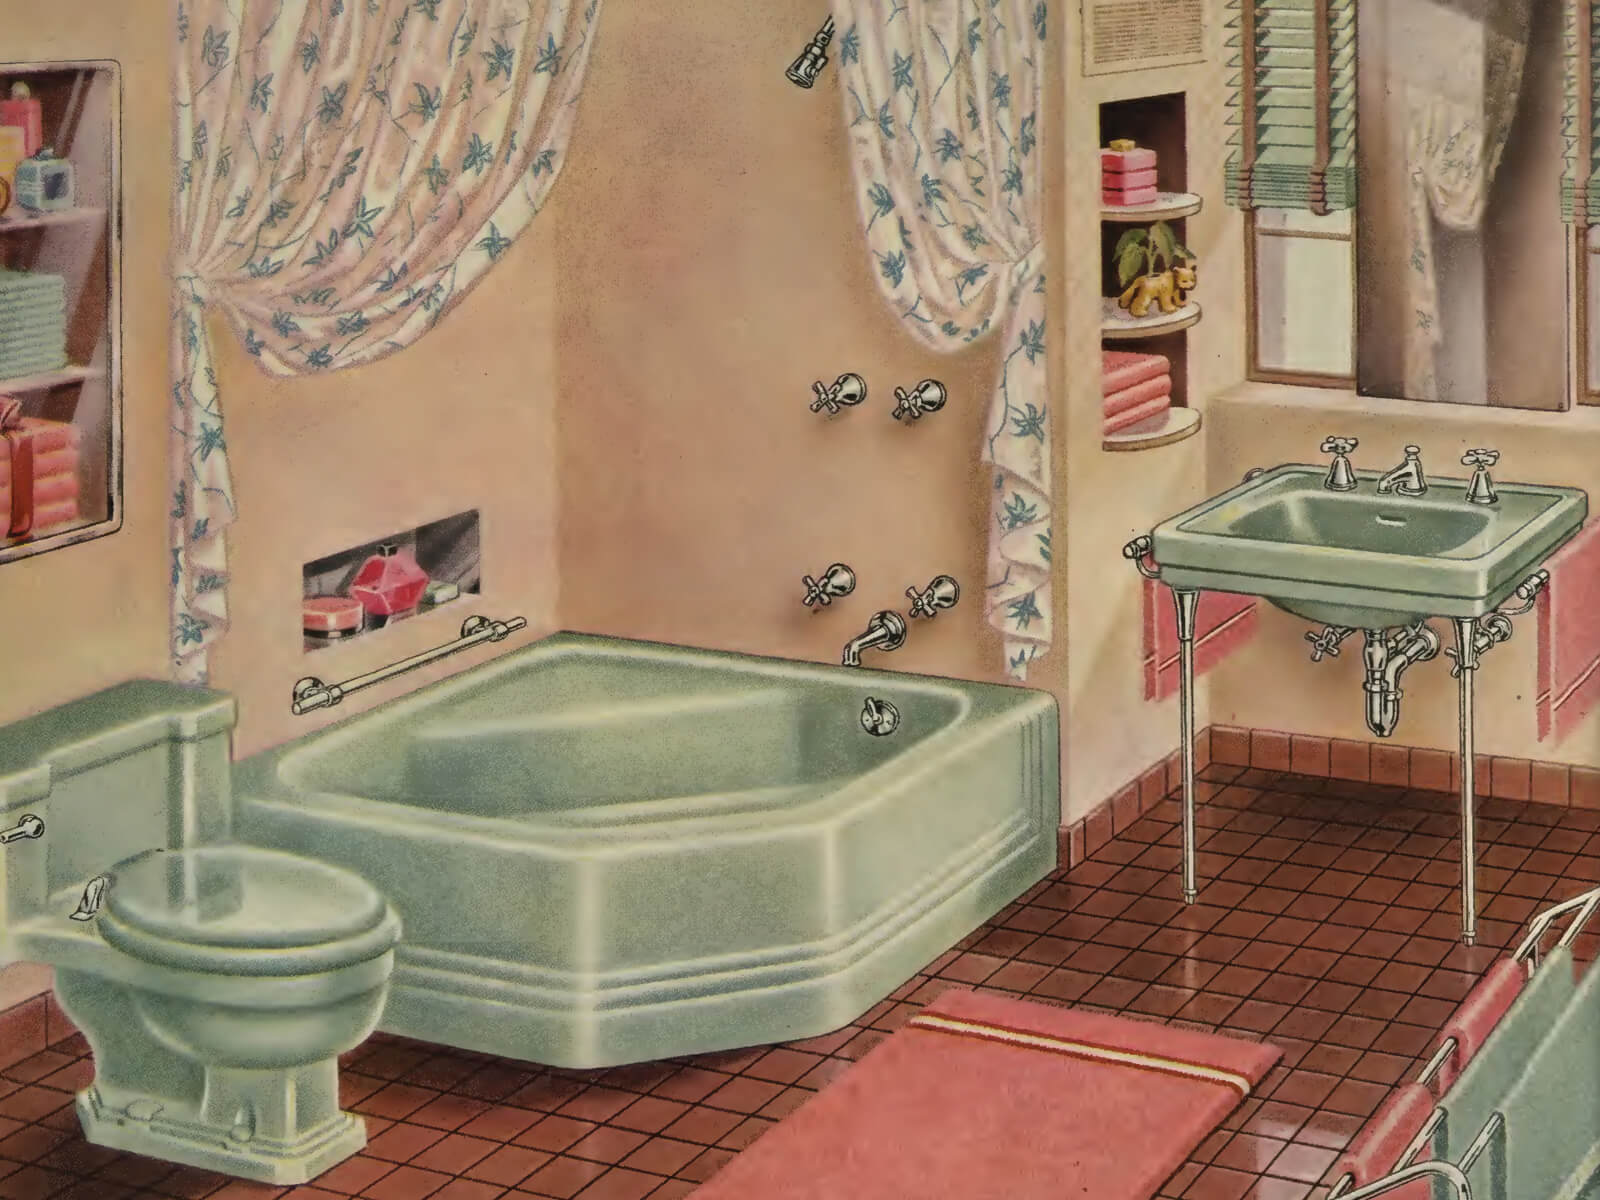 vintage bathtub illustration